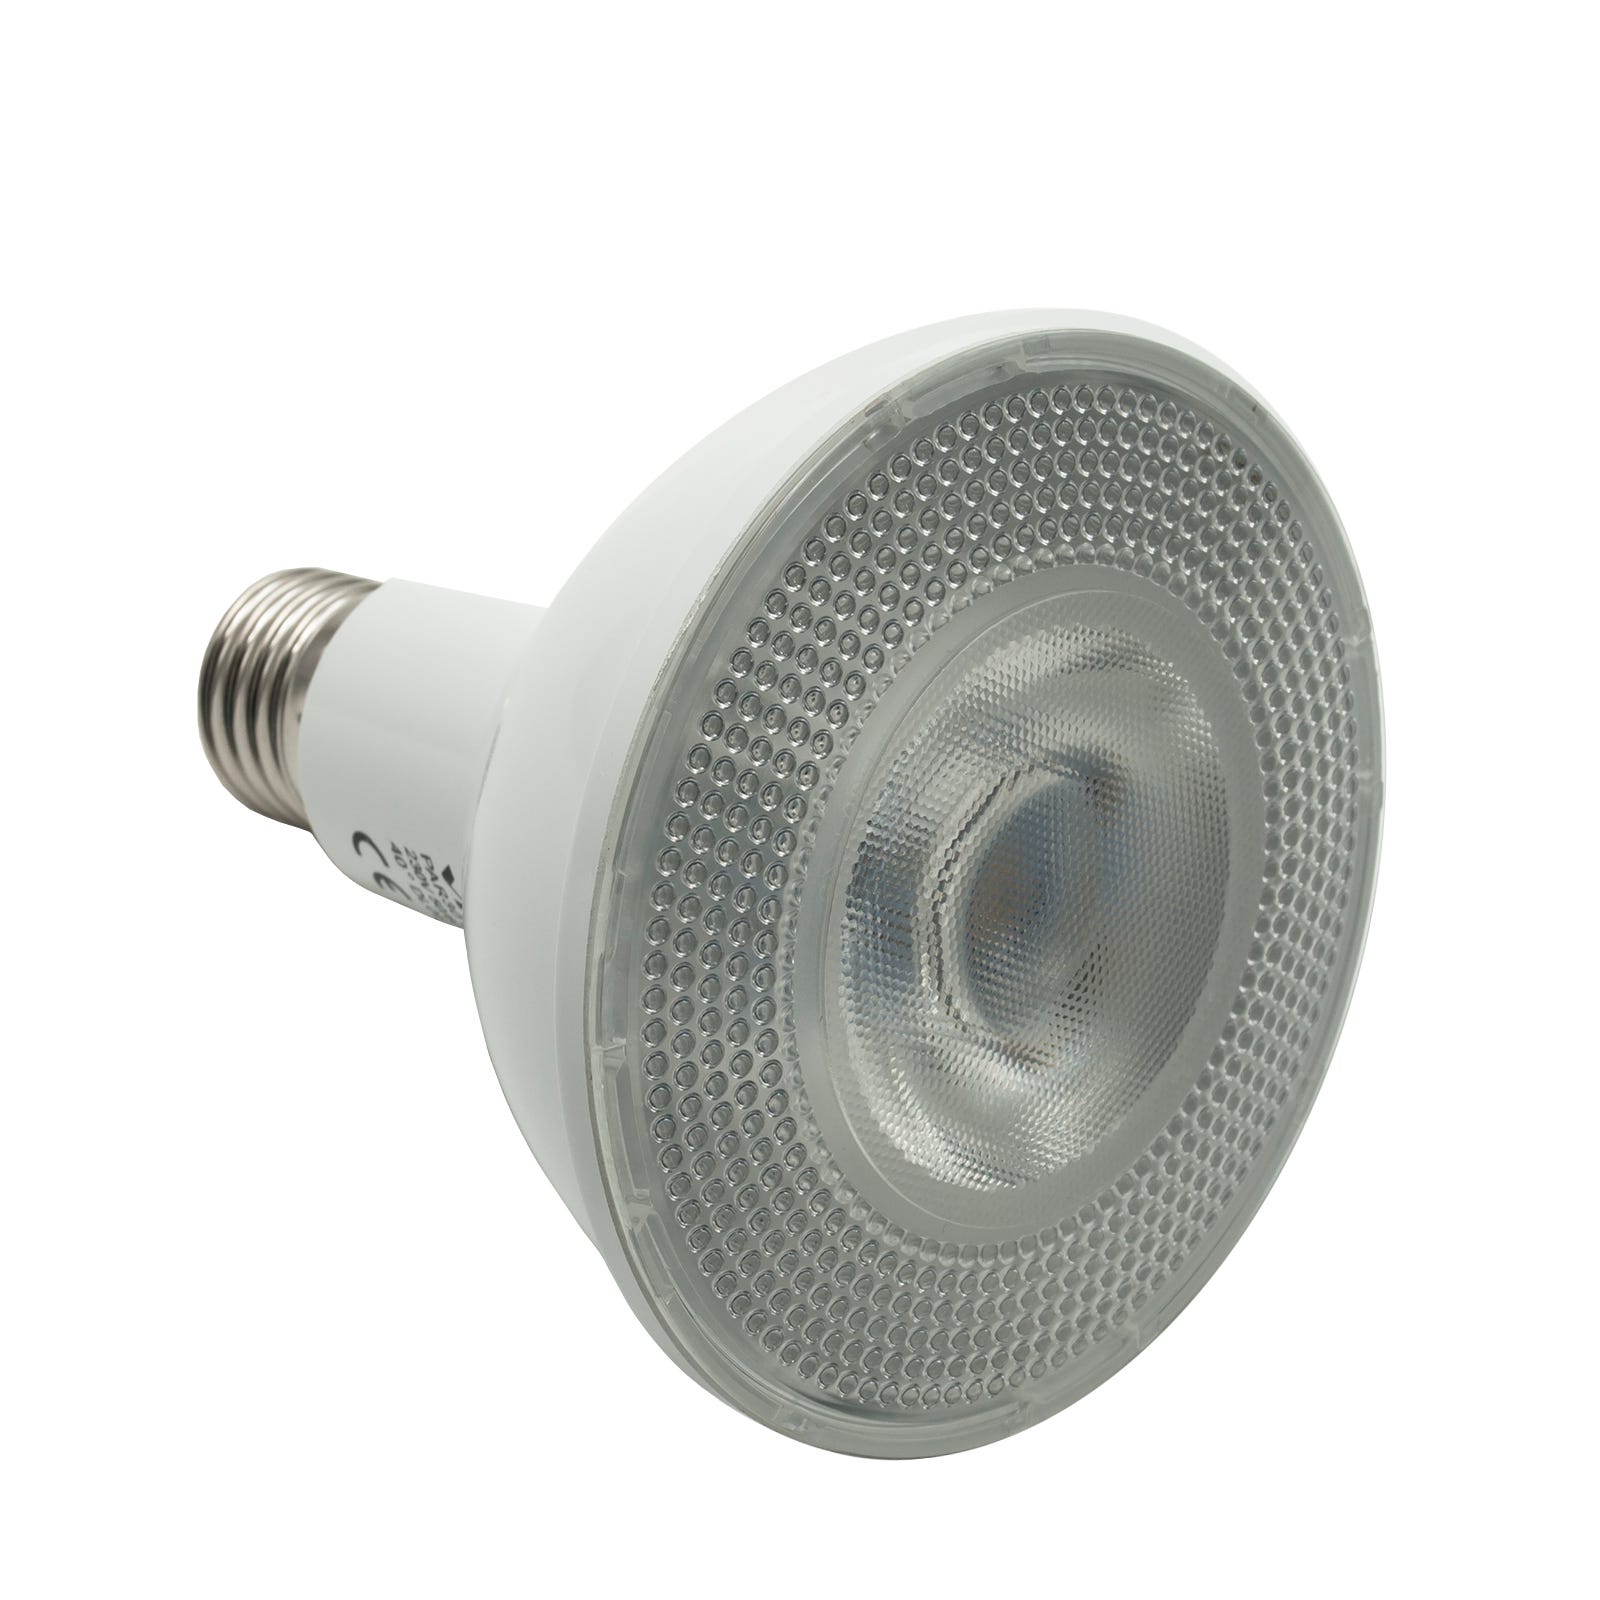 Led spot lamp 12W par30 ampoule E27 850lm sortie 75W angle étroit COLD  LIGHT 6400K